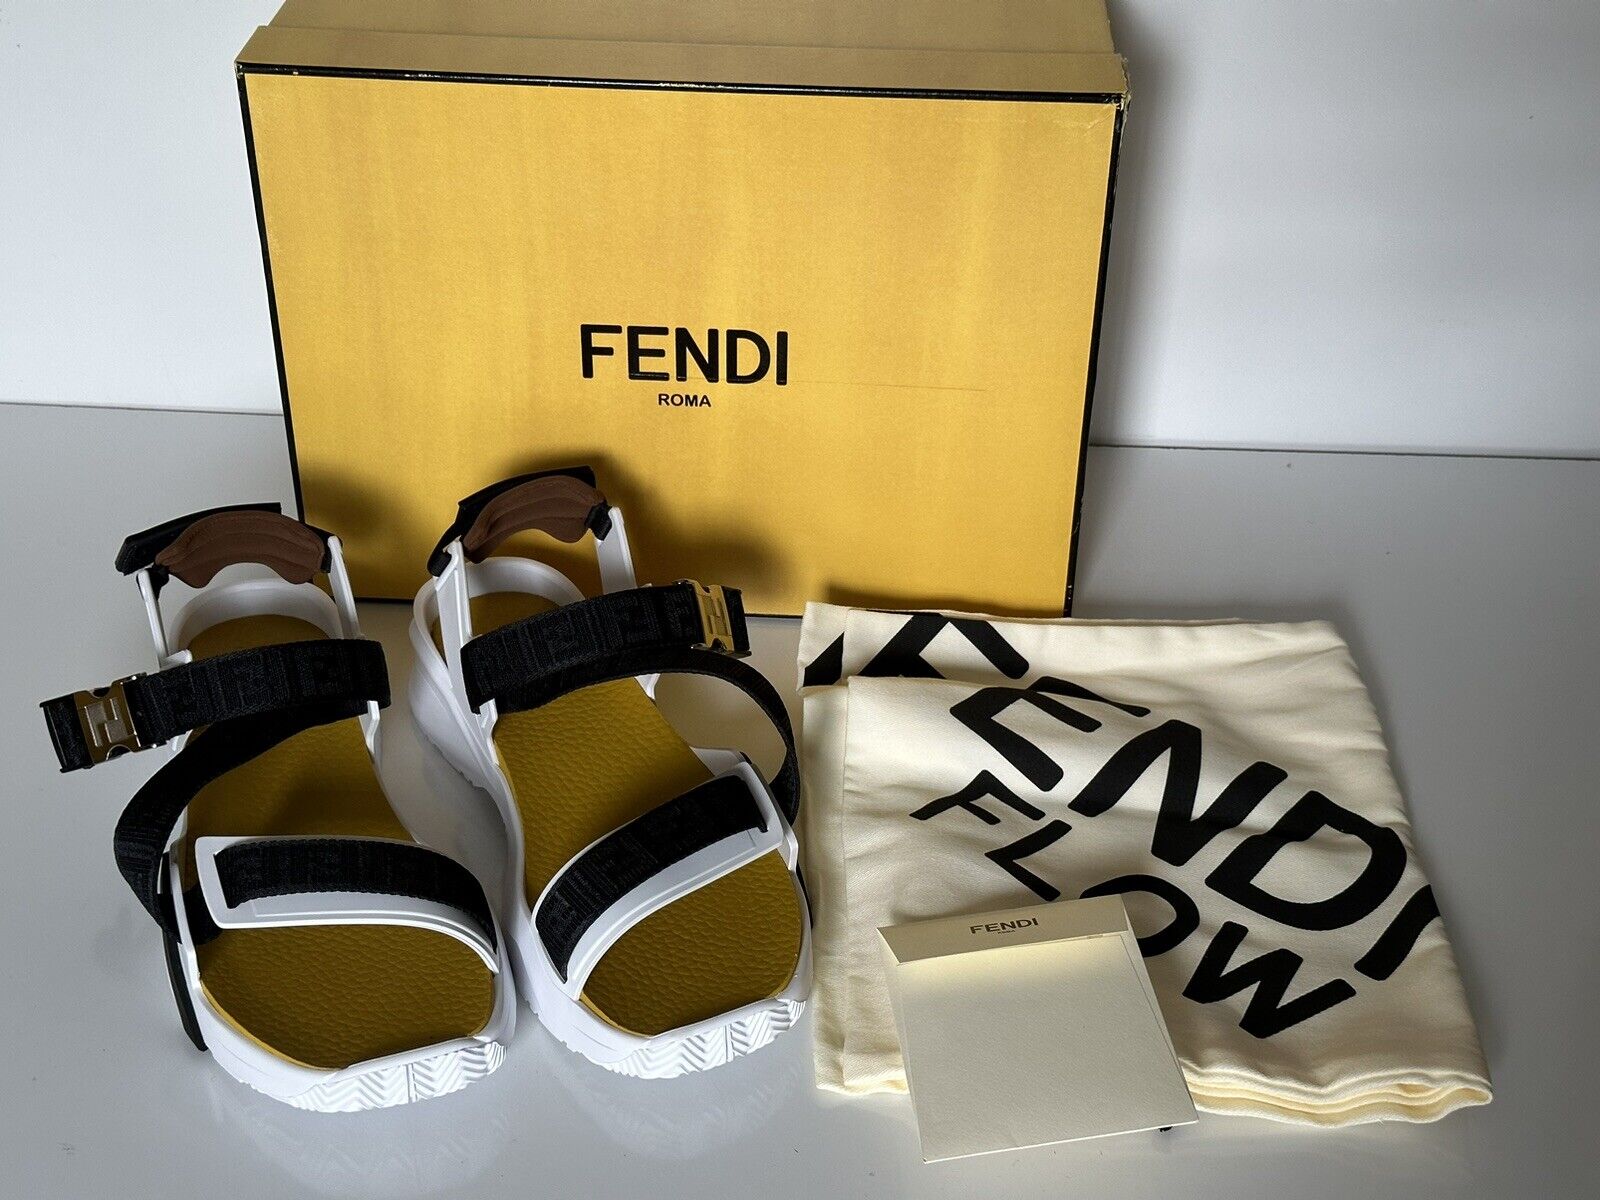 Мужские сандалии Fendi с ремешками FF 895 долларов США 12 США/11 Великобритания Италия 7X1503 